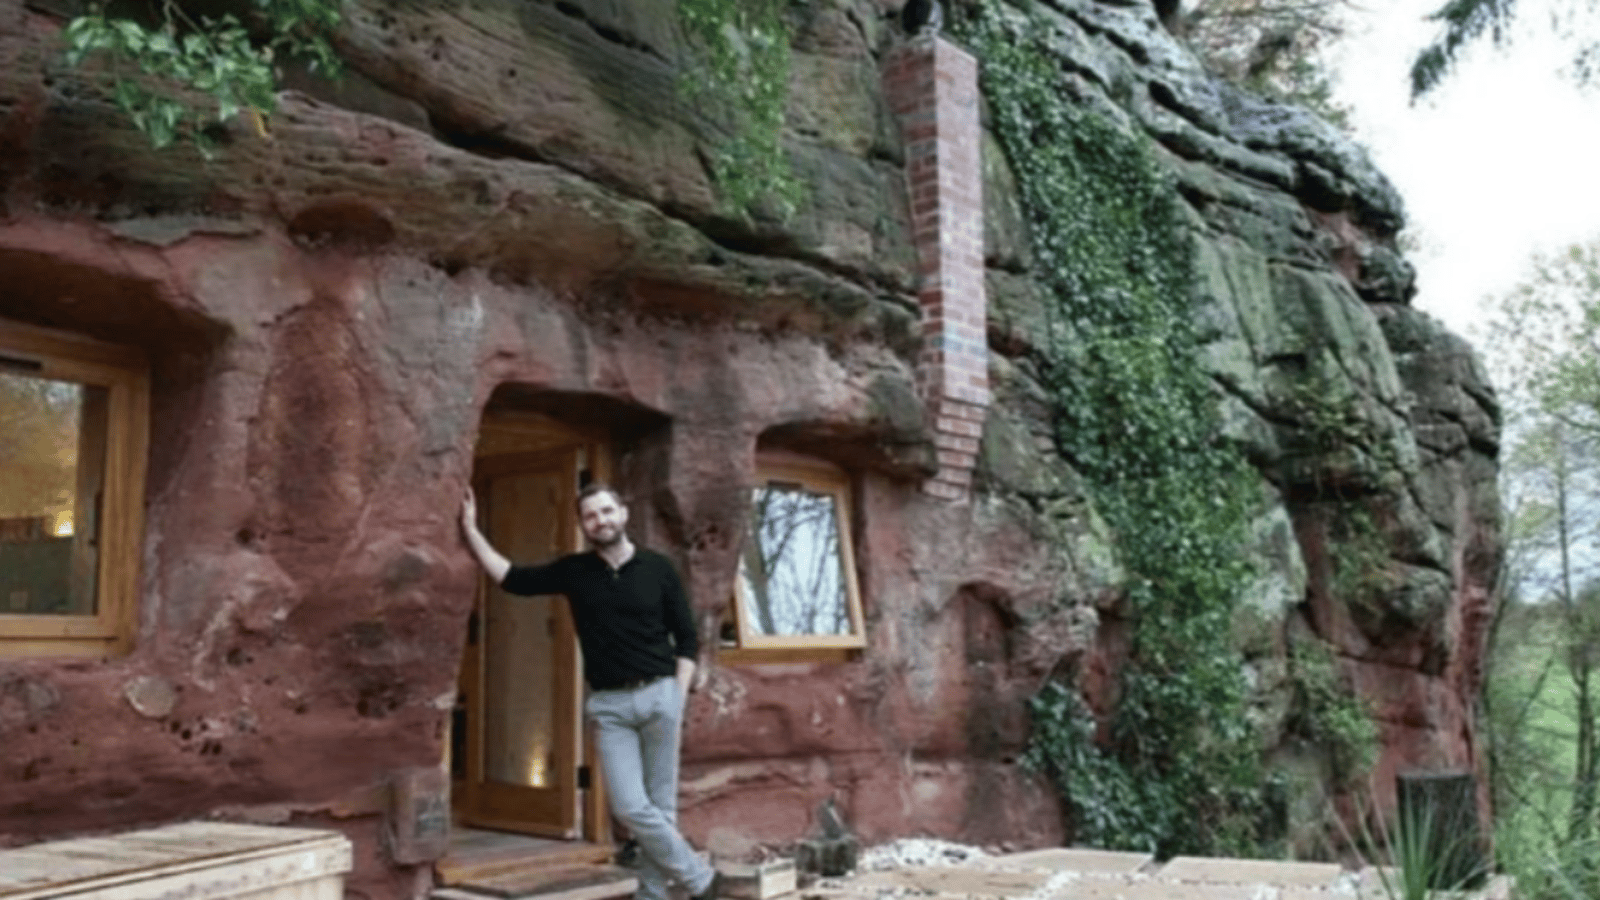 Il transforme une grotte vieille de 800 ans en magnifique maison